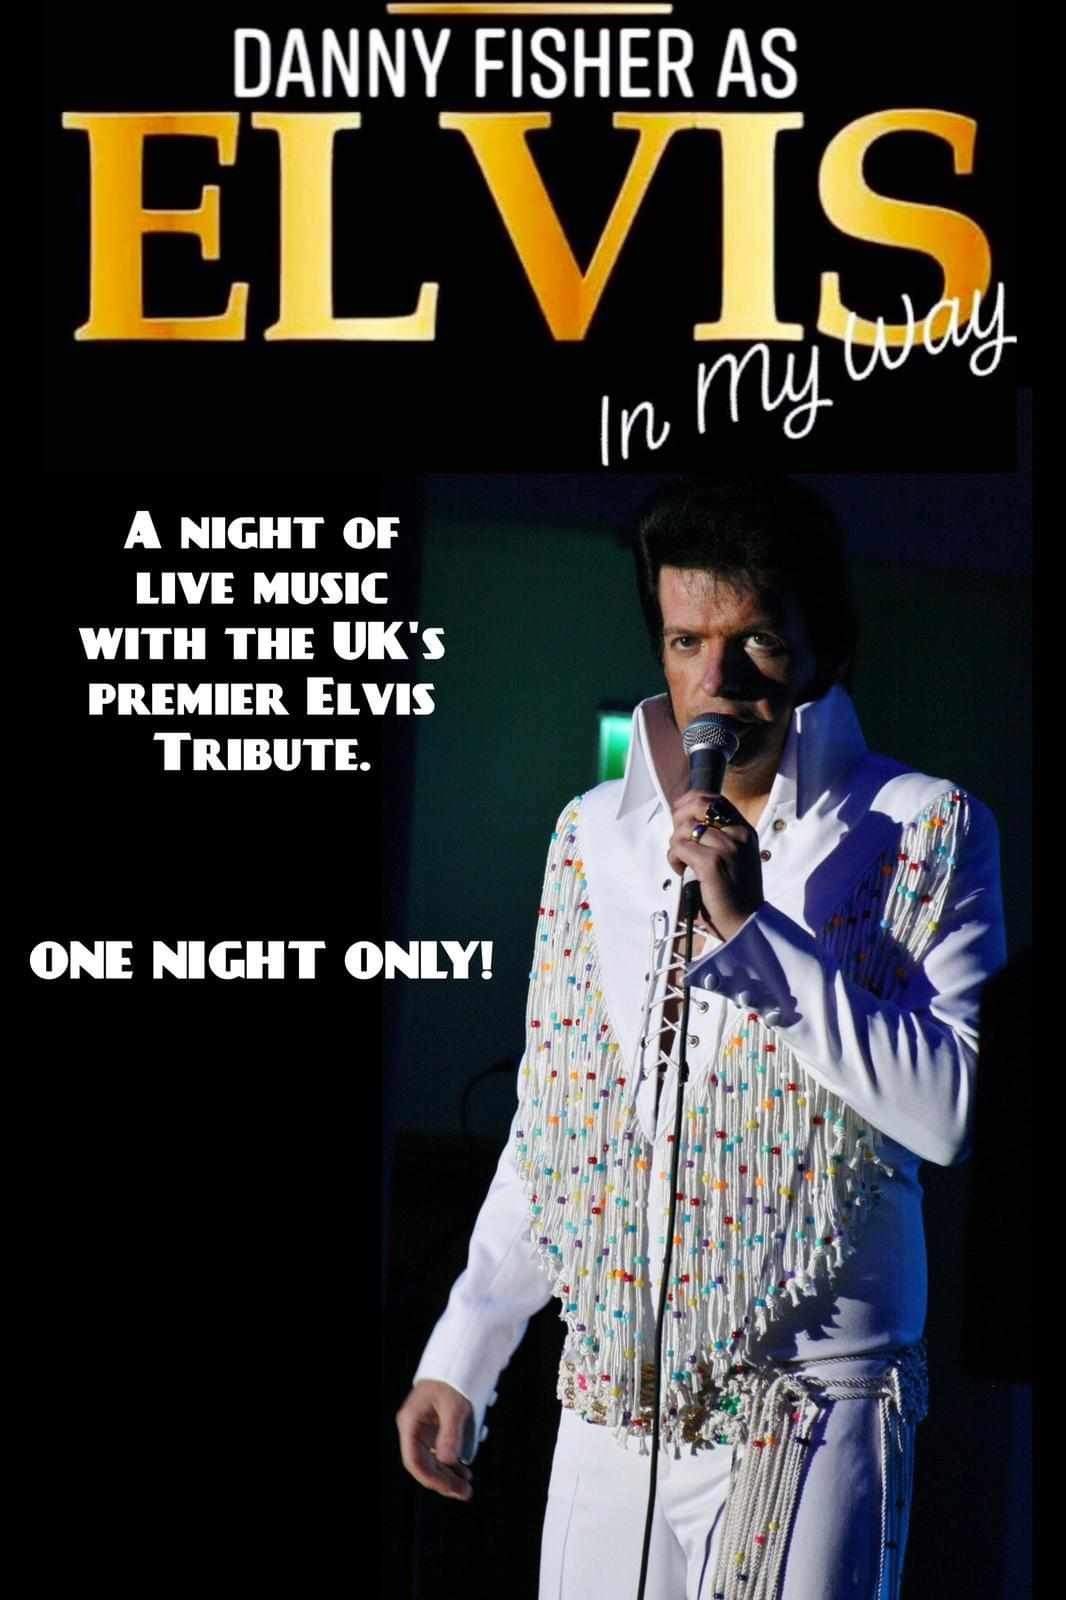 One night with Elvis  on juin 15, 19:30@Benwick village hall - Achetez des billets et obtenez des informations surwhittlesey music nights 